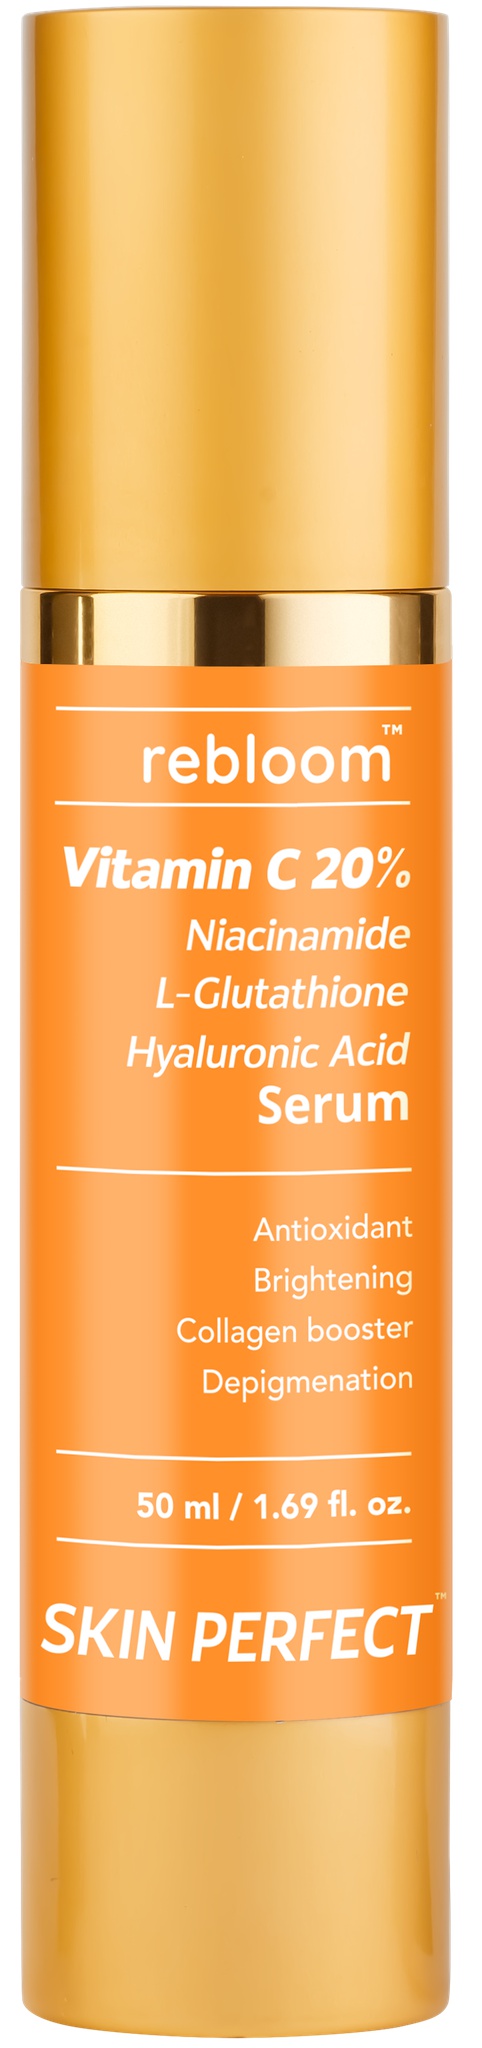 Rebloom Vitamin C 20% + Hyaluronic Acid Serum